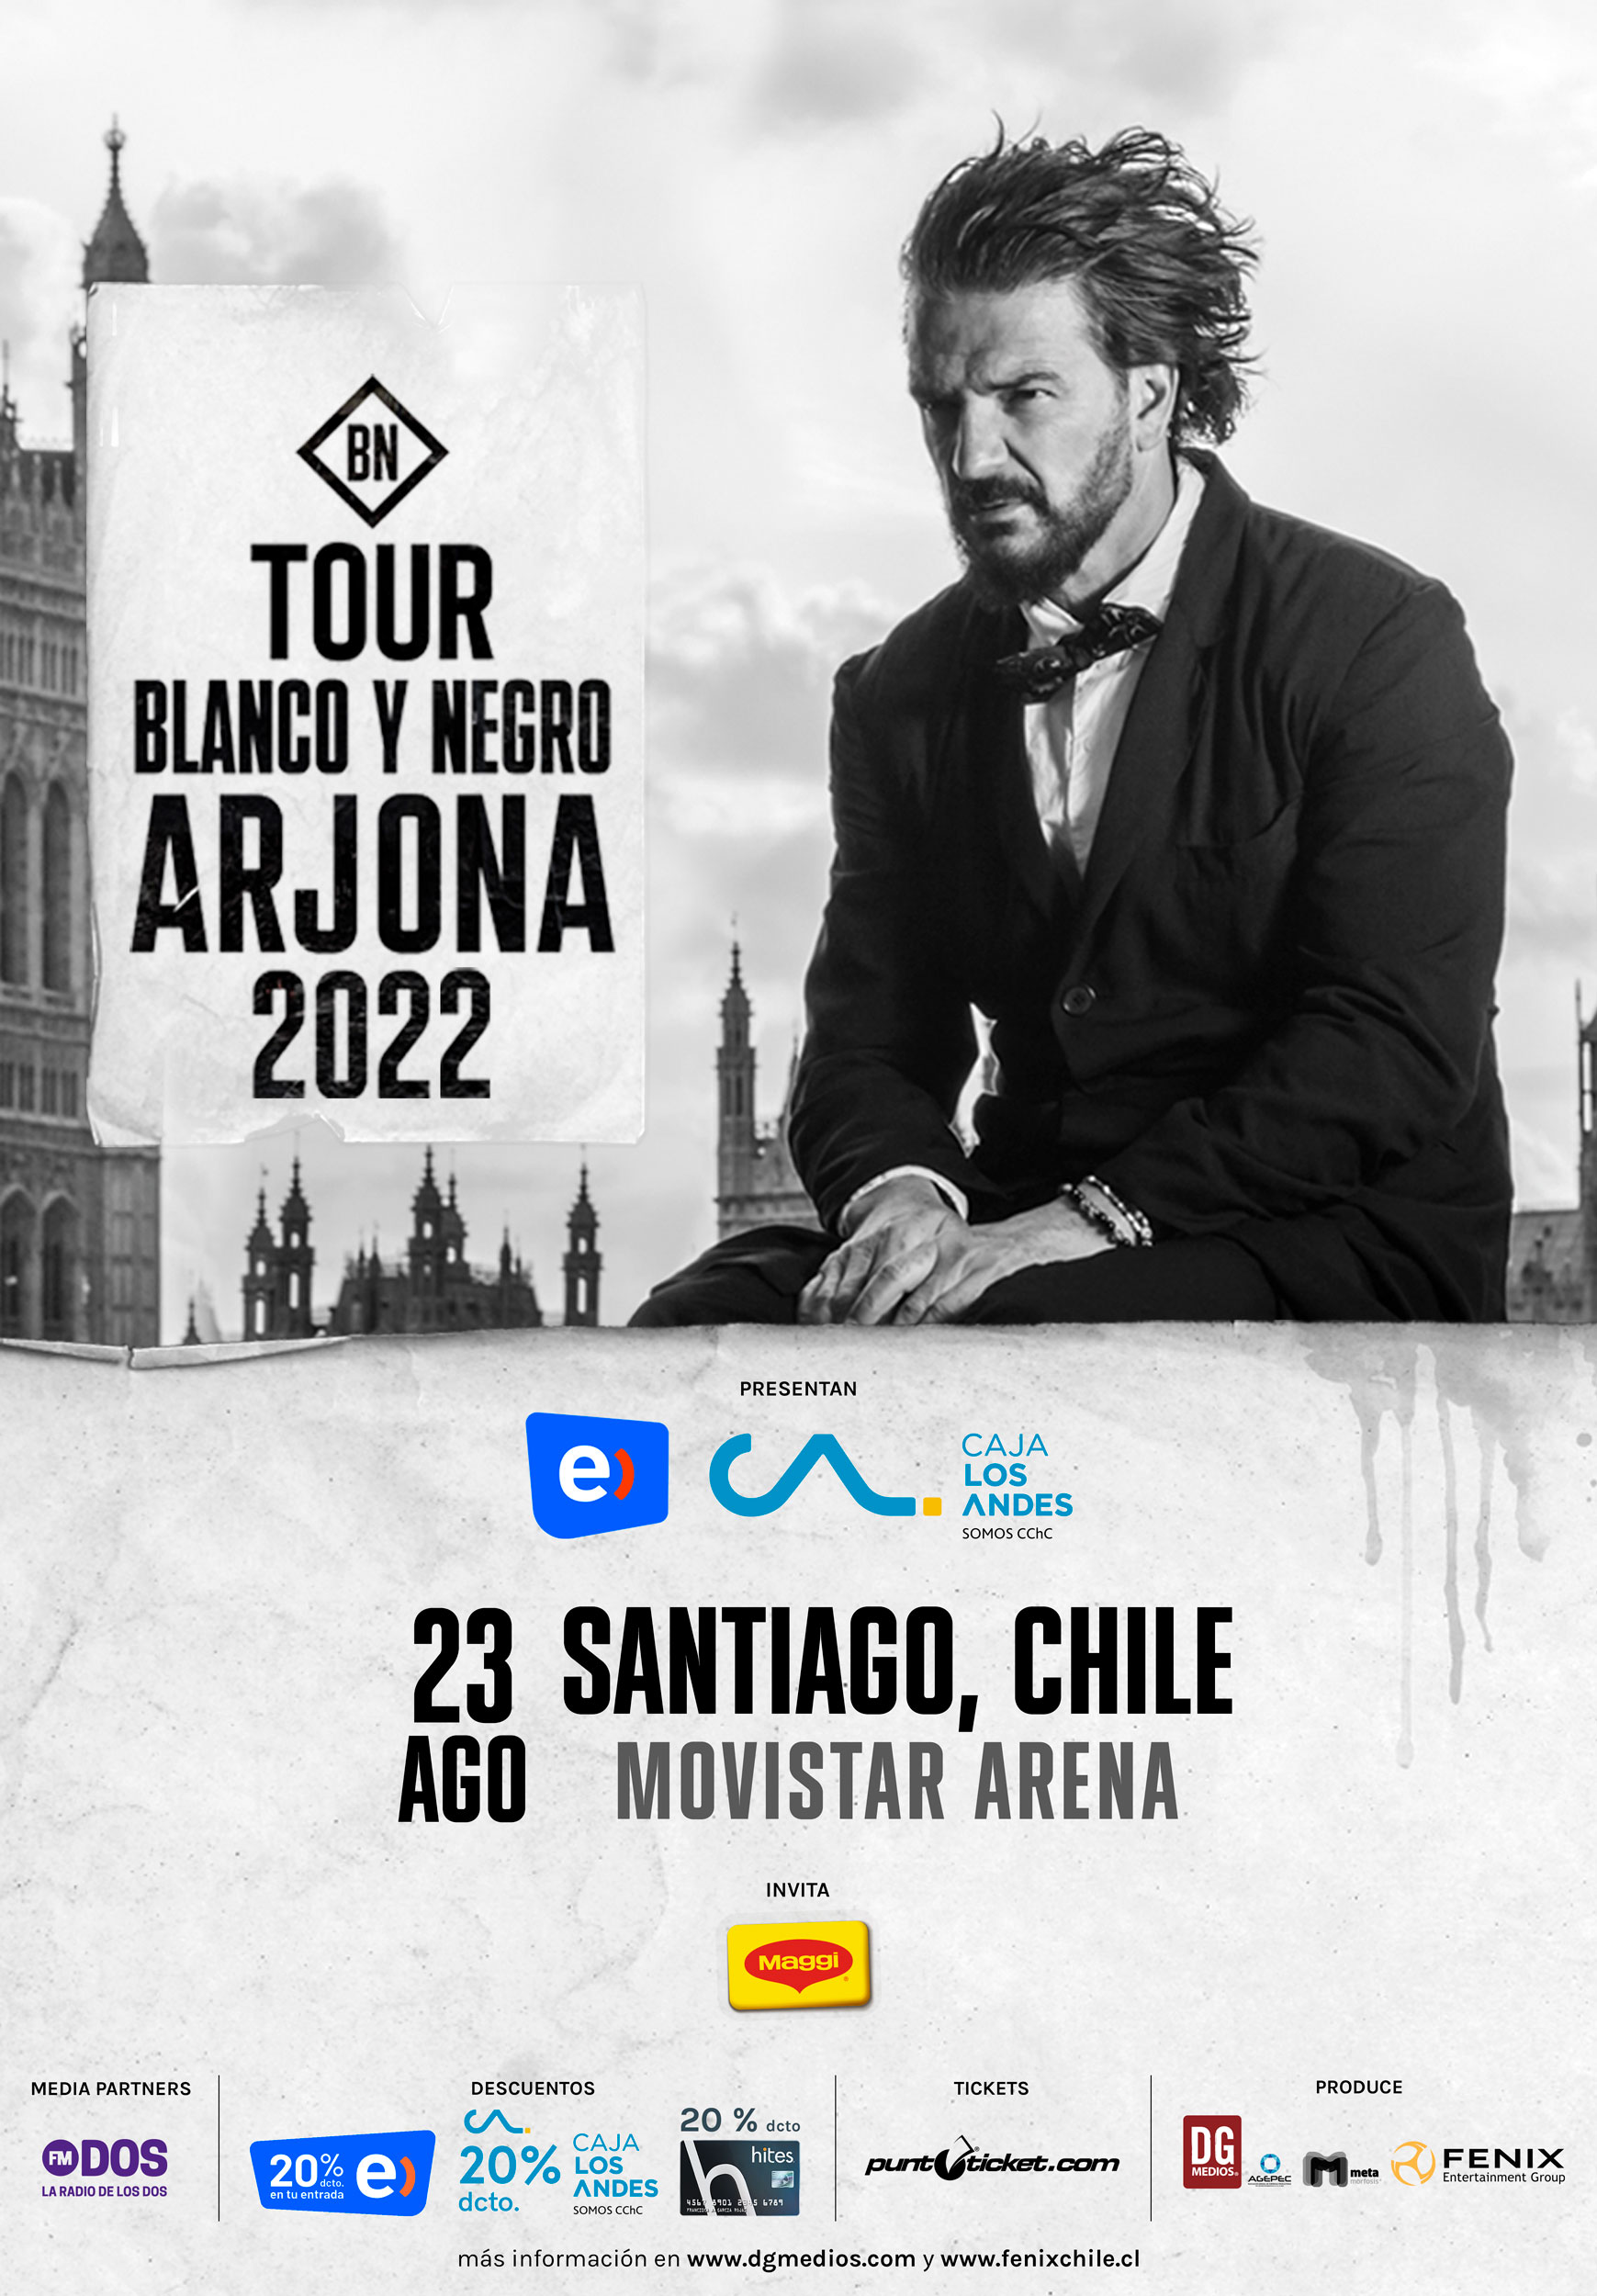 Ricardo Arjona - Blanco y Negro Tour